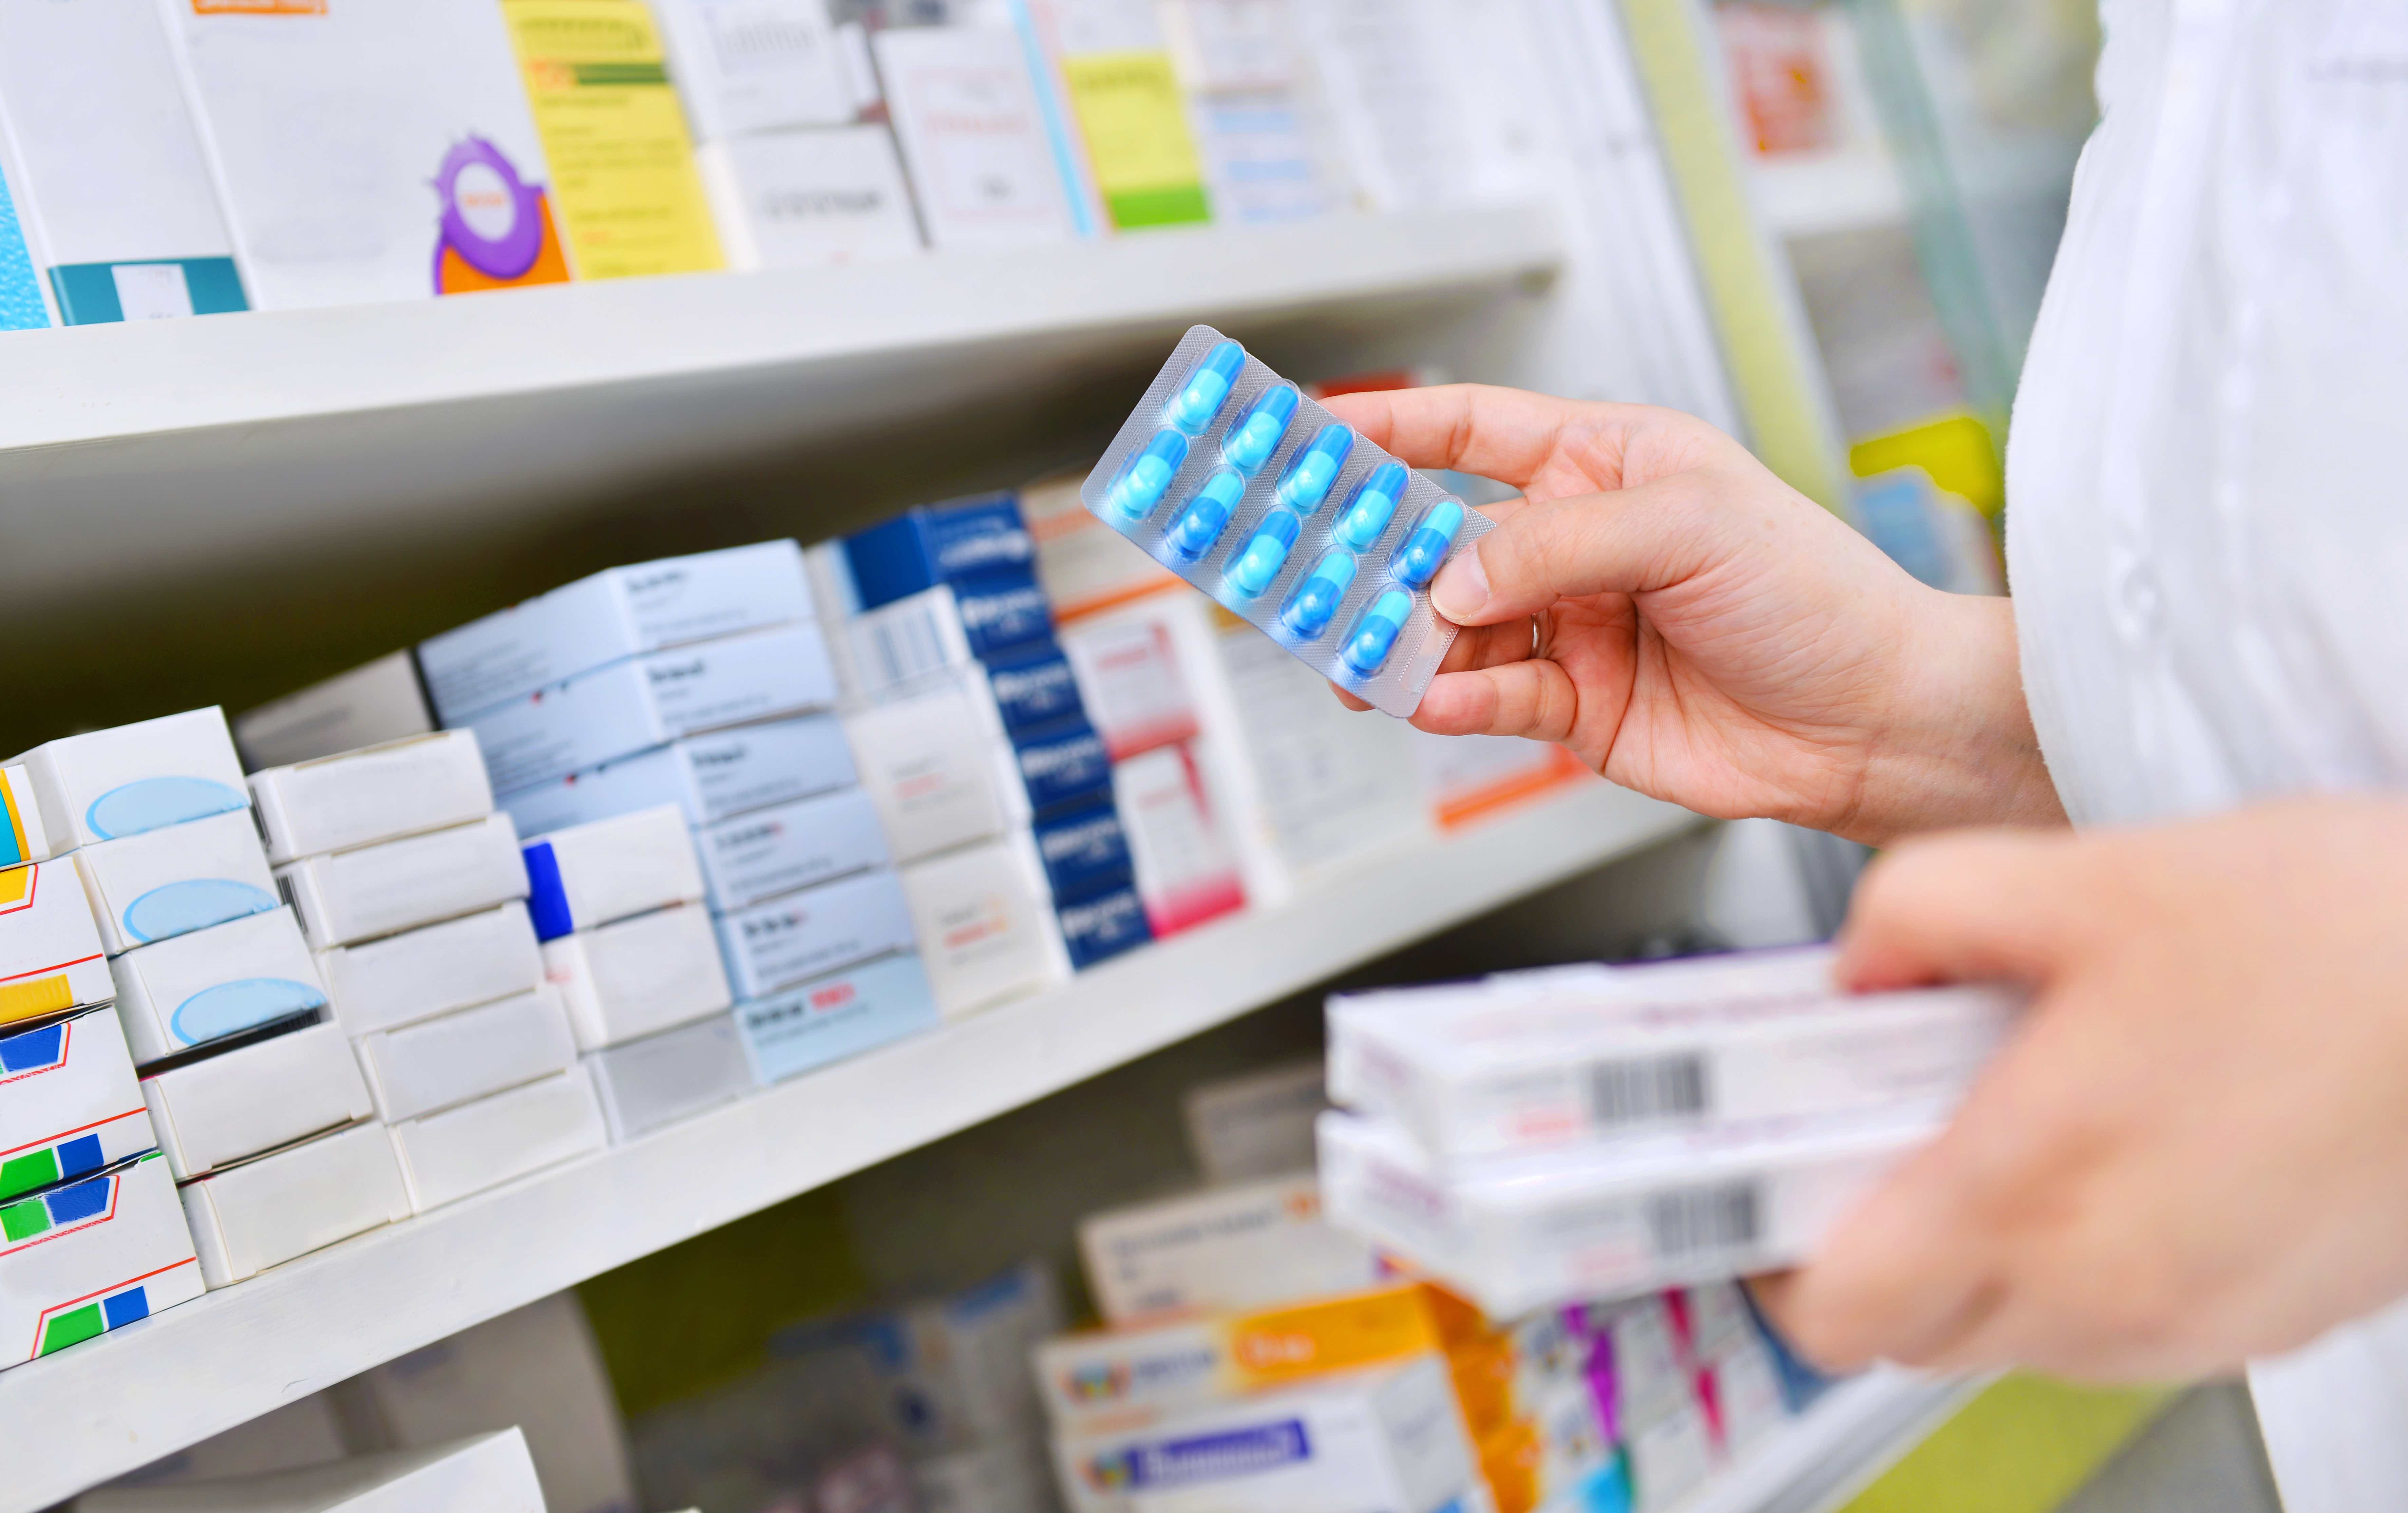 Todas las farmacia y establecimientos del salud deben suministrar los medicamentos prescriptos en recetas electrónicas o digitales (Europa Press)